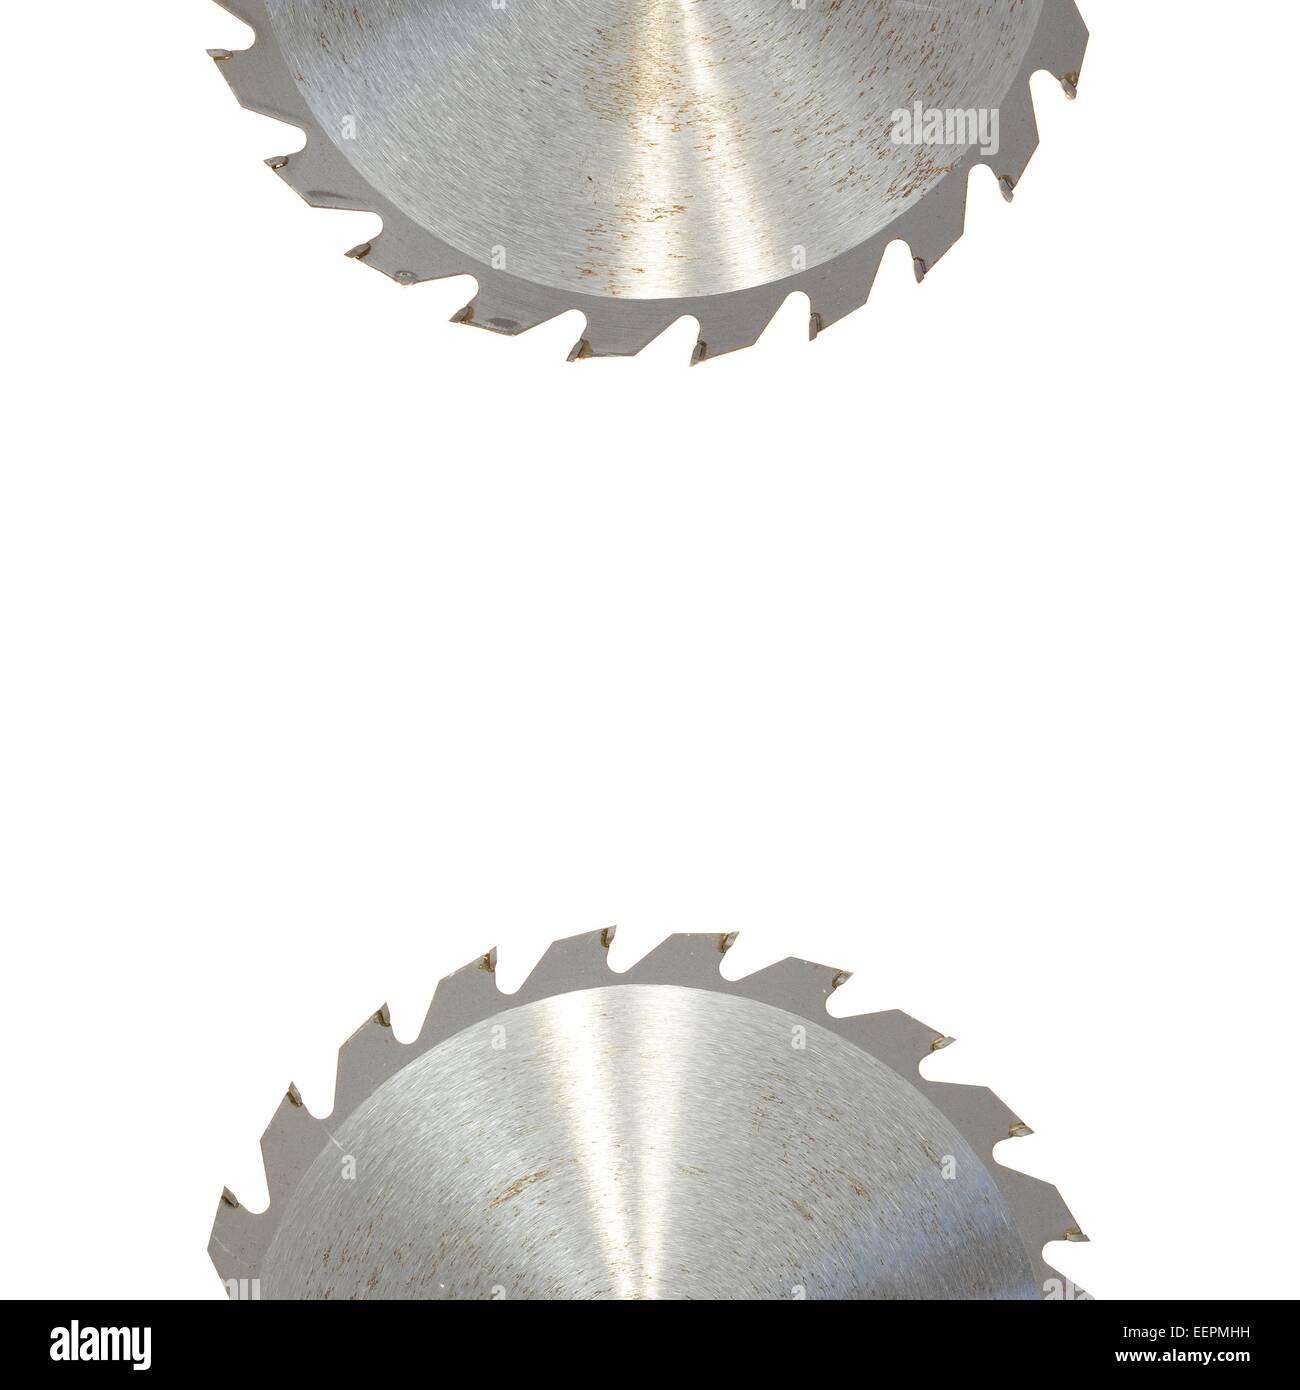 A close up shot of a circular saw blade Stock Photo